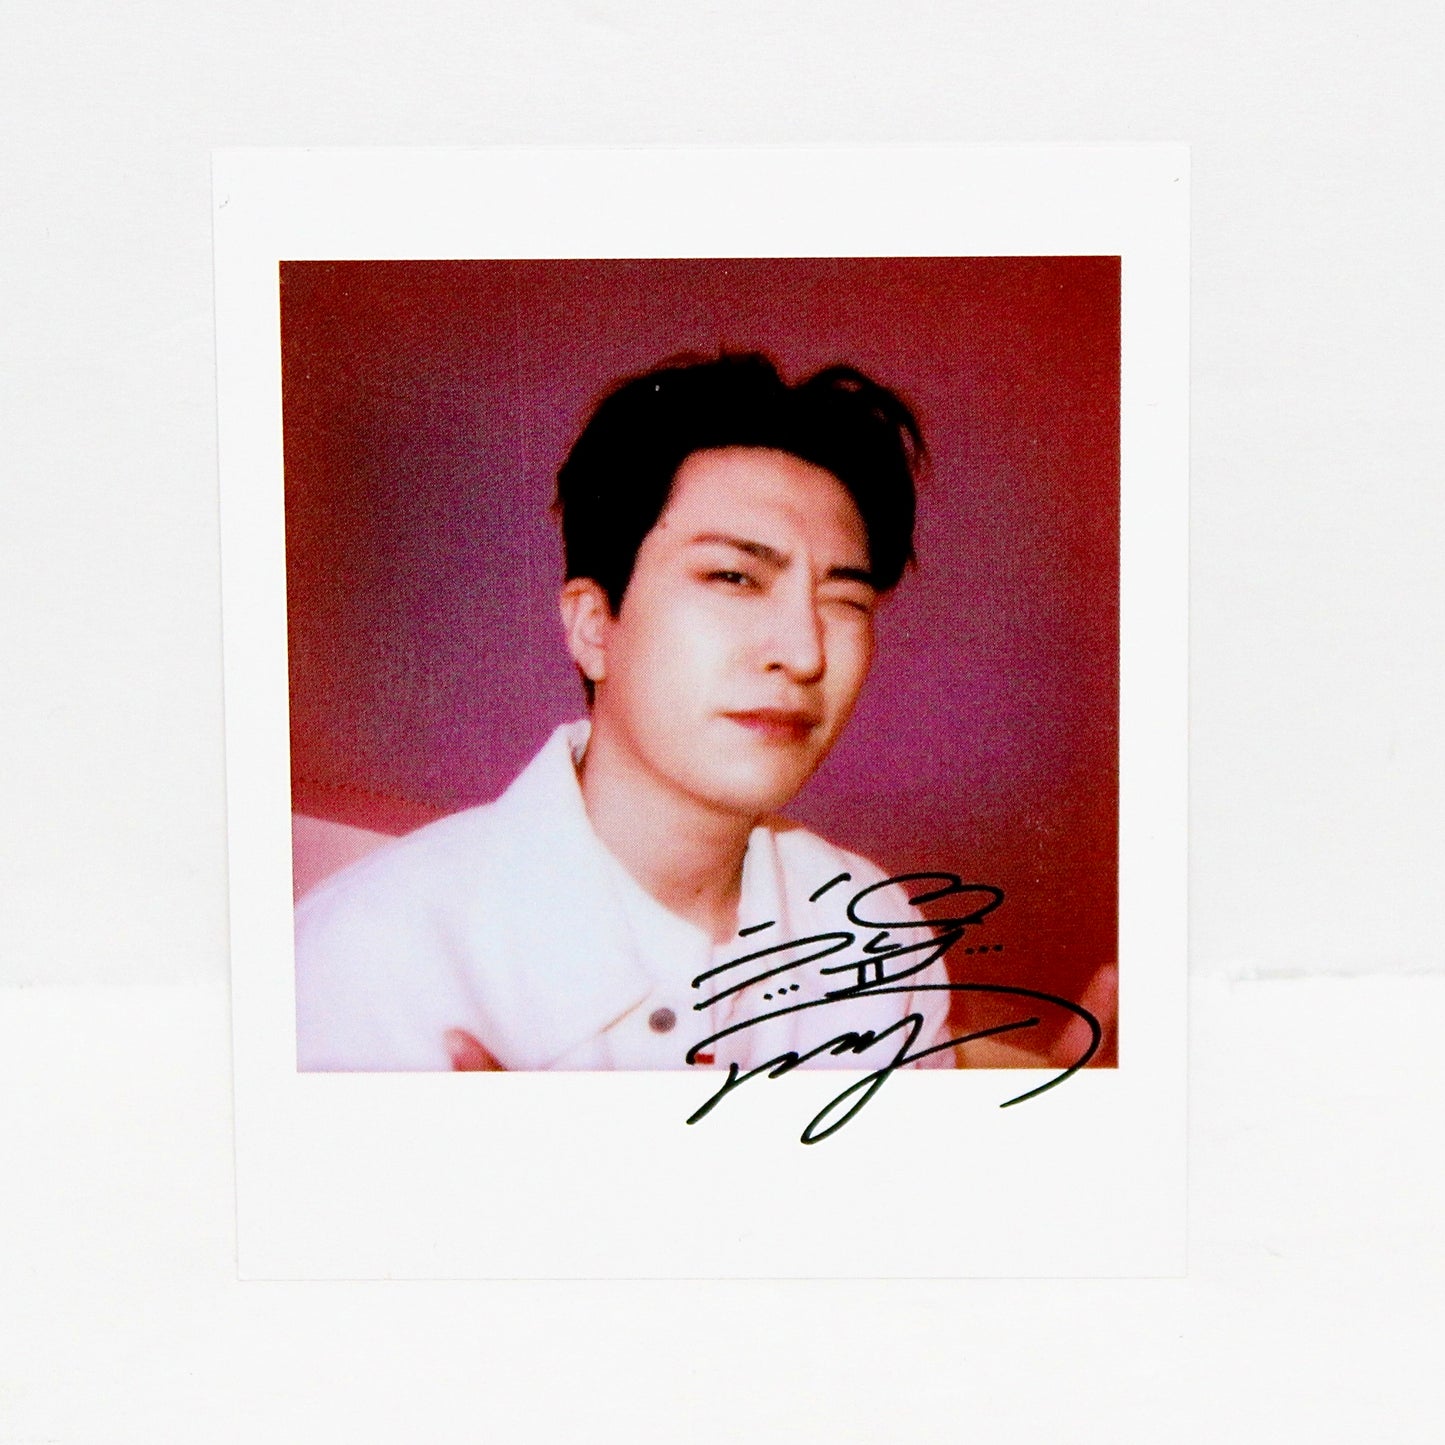 GOT7 12th Mini Album: GOT7 | Youngjae Polaroids